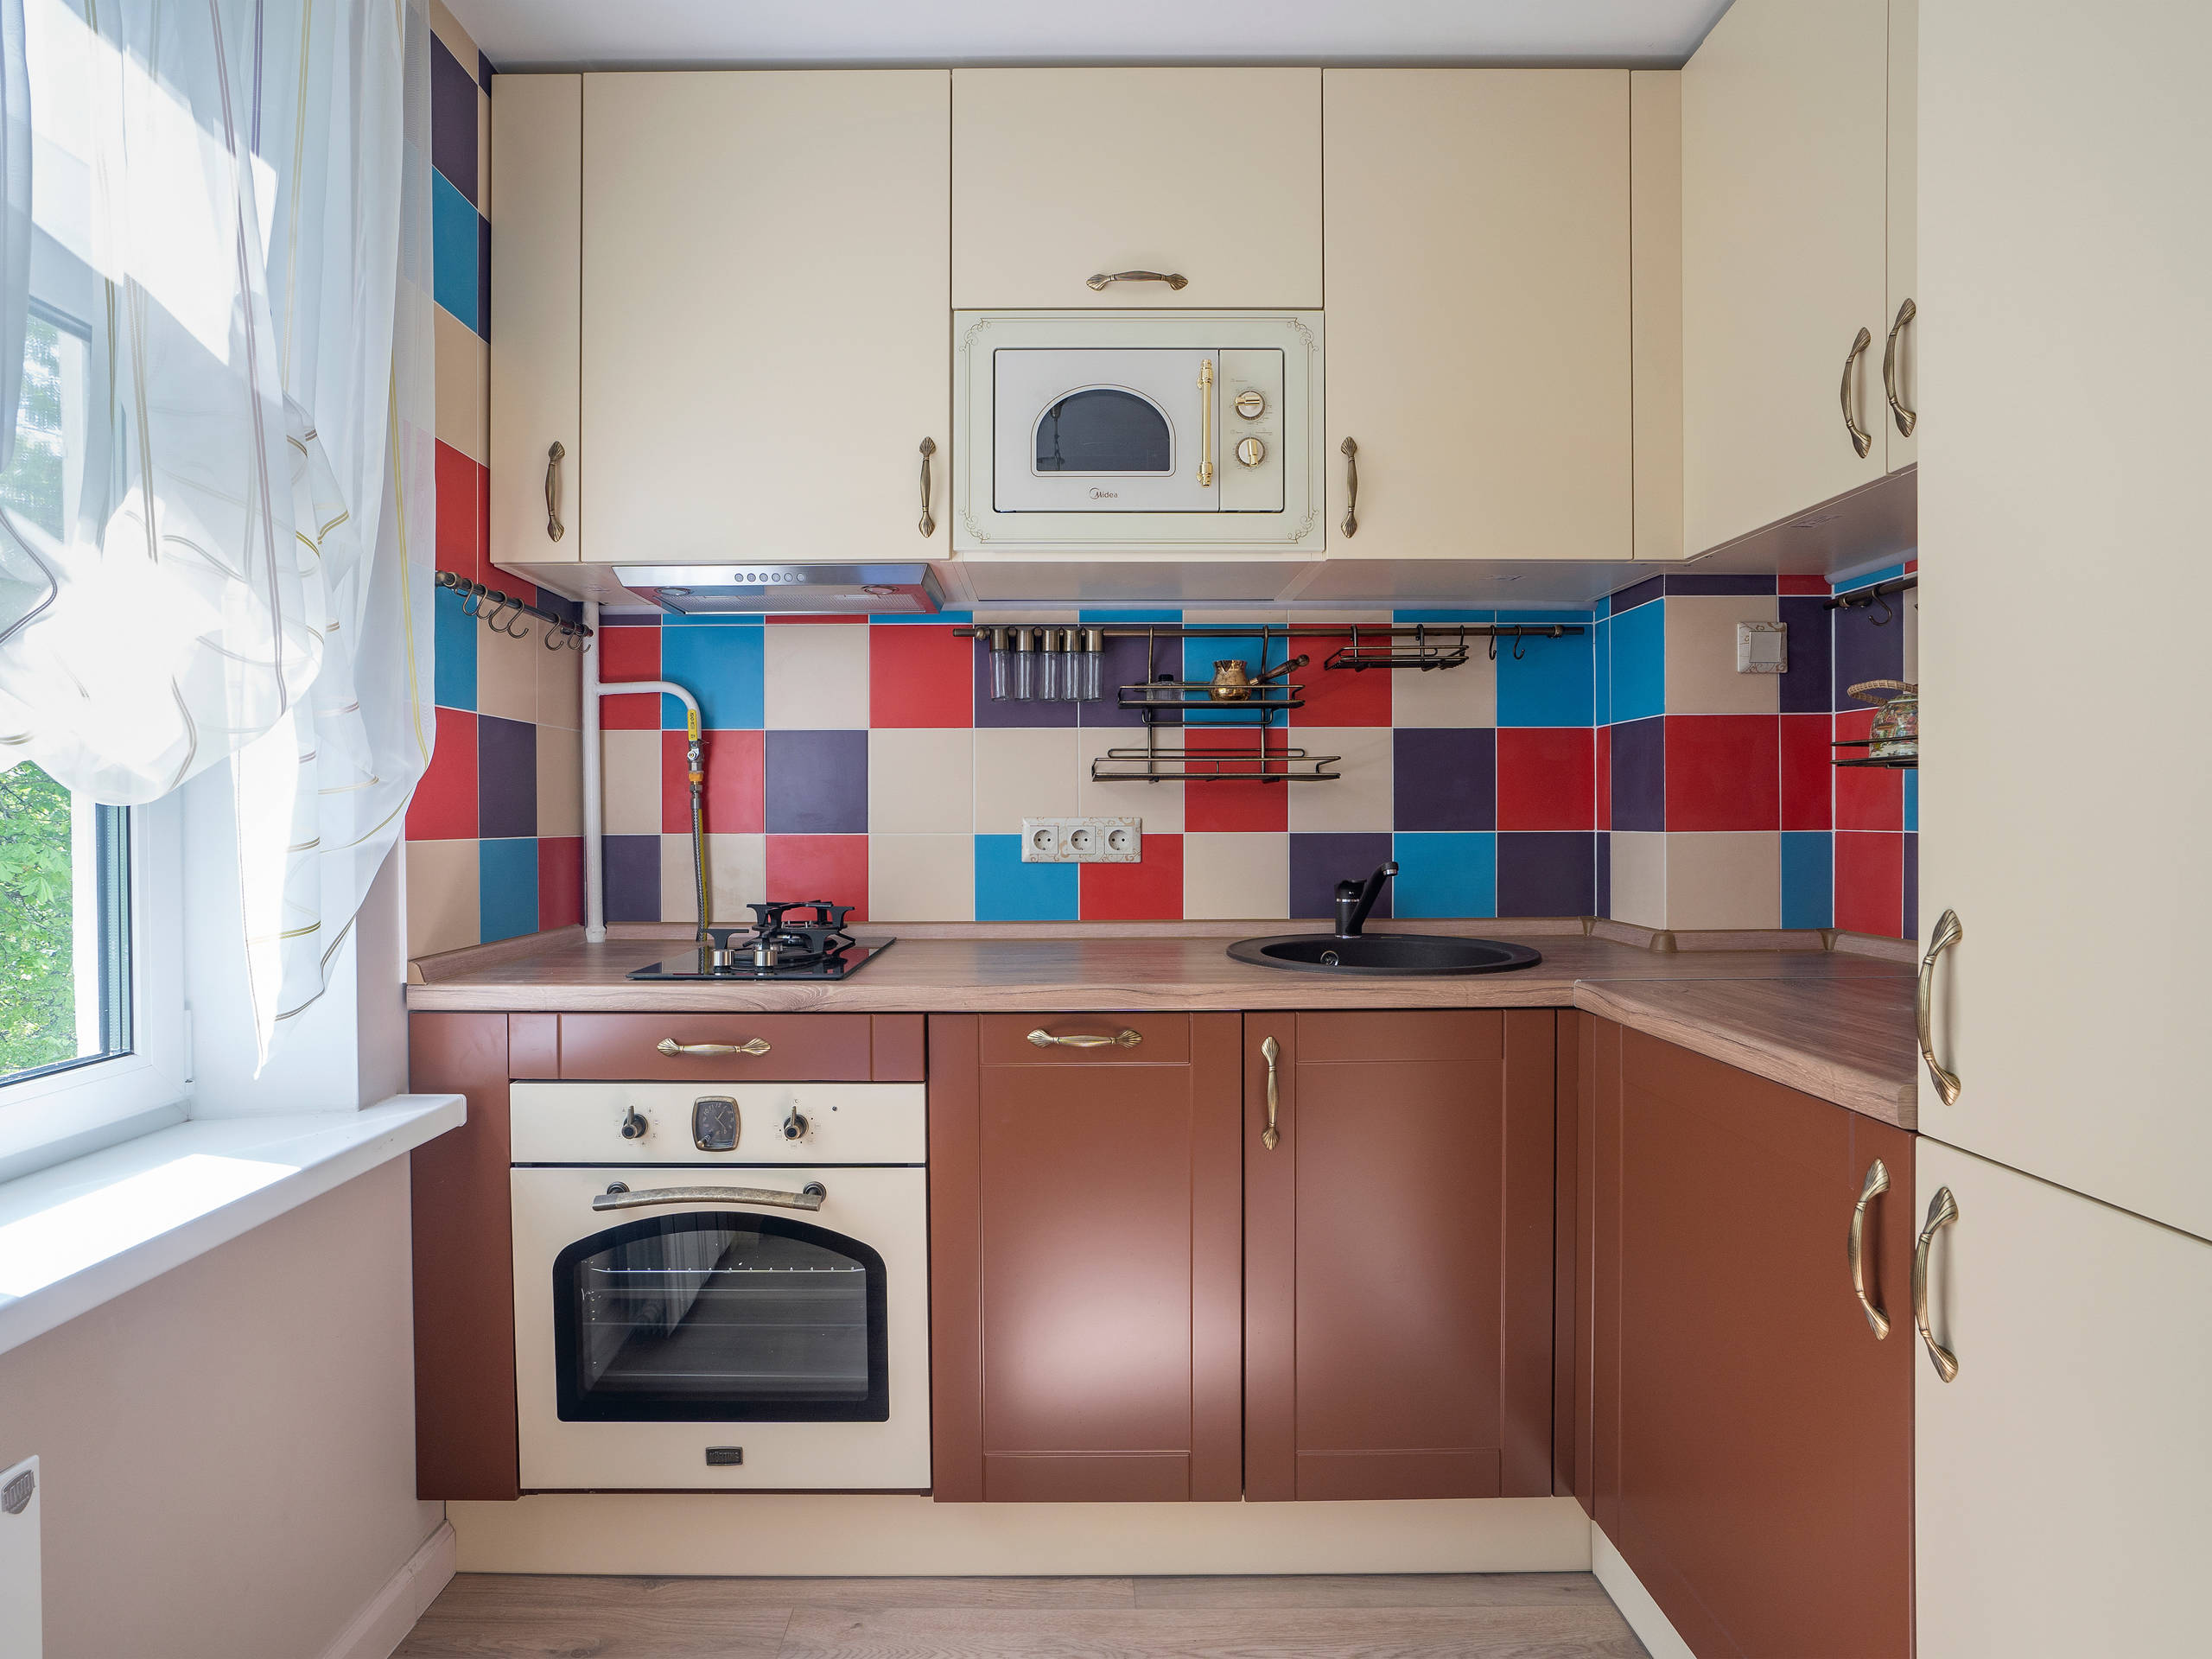 Уютная сканди-кухня 7 м² в типовой панельке (фото до и после)